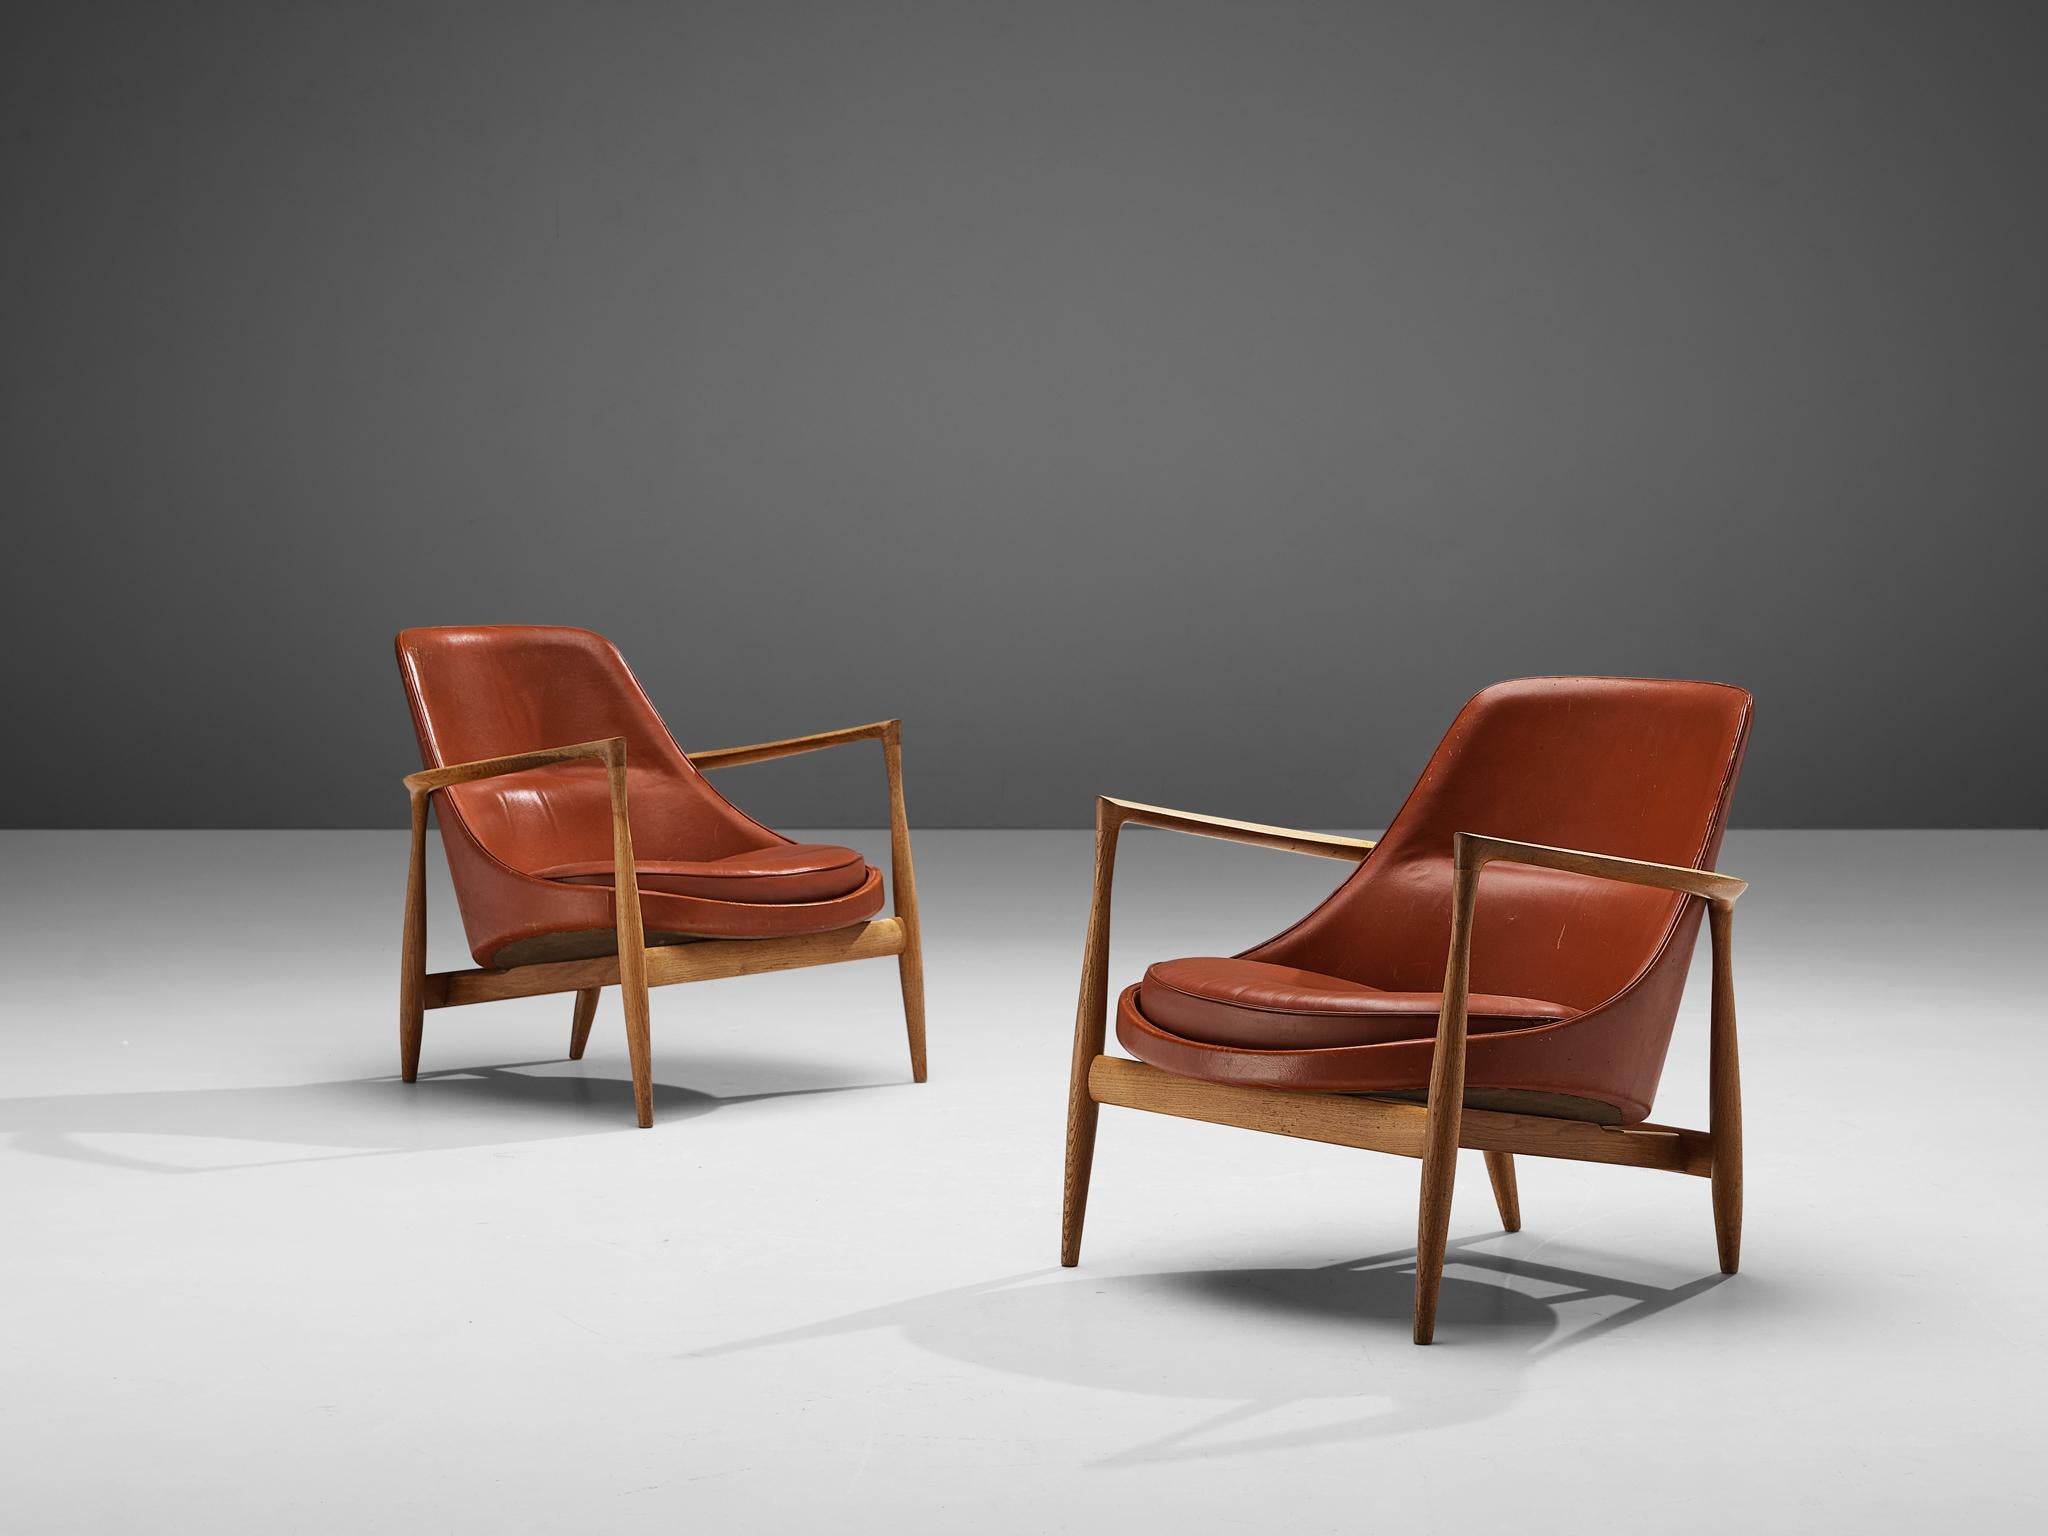 Ib Kofod-Larsen, Sessel Modell U-56 'Elizabeth', Eiche, rotes Leder, Dänemark, Entwurf 1956

Ein Paar Sessel, entworfen von Ib Kofod-Larsen im Jahr 1956. Diese Stühle von Kofod-Larsen sind von höchster Qualität, mit einem Gestell aus Eichenholz und